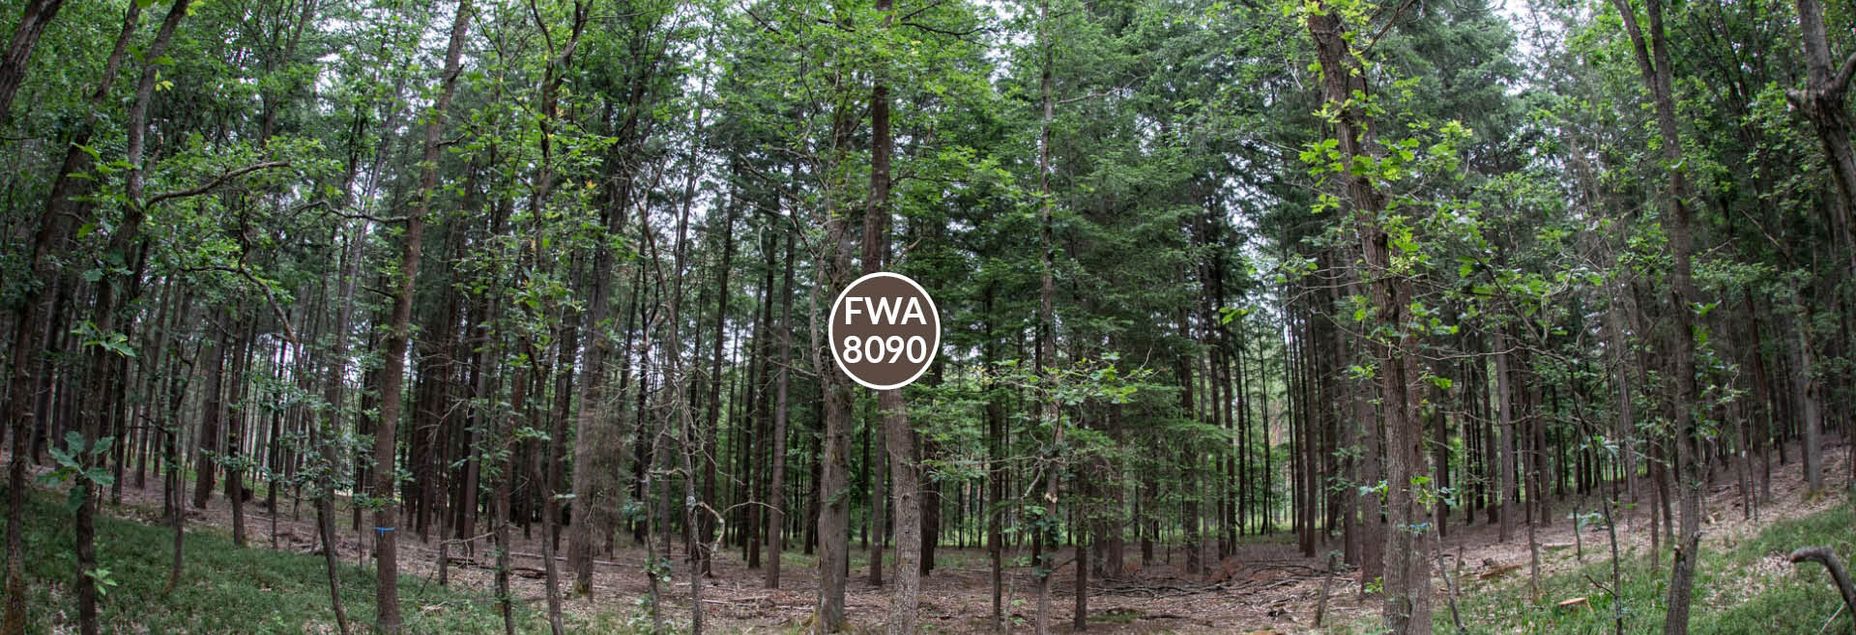 FriedWald-Onlineshop FWA 8090